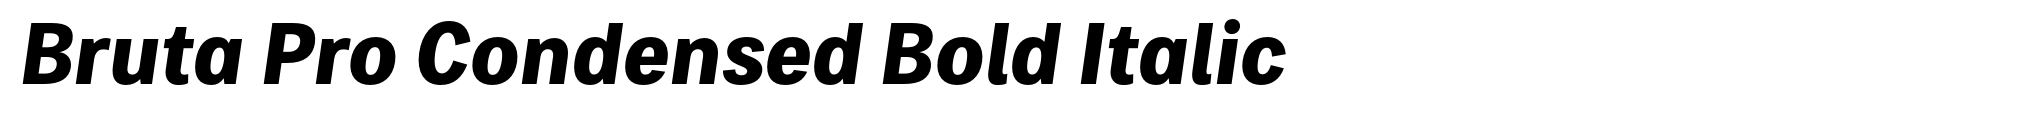 Bruta Pro Condensed Bold Italic image